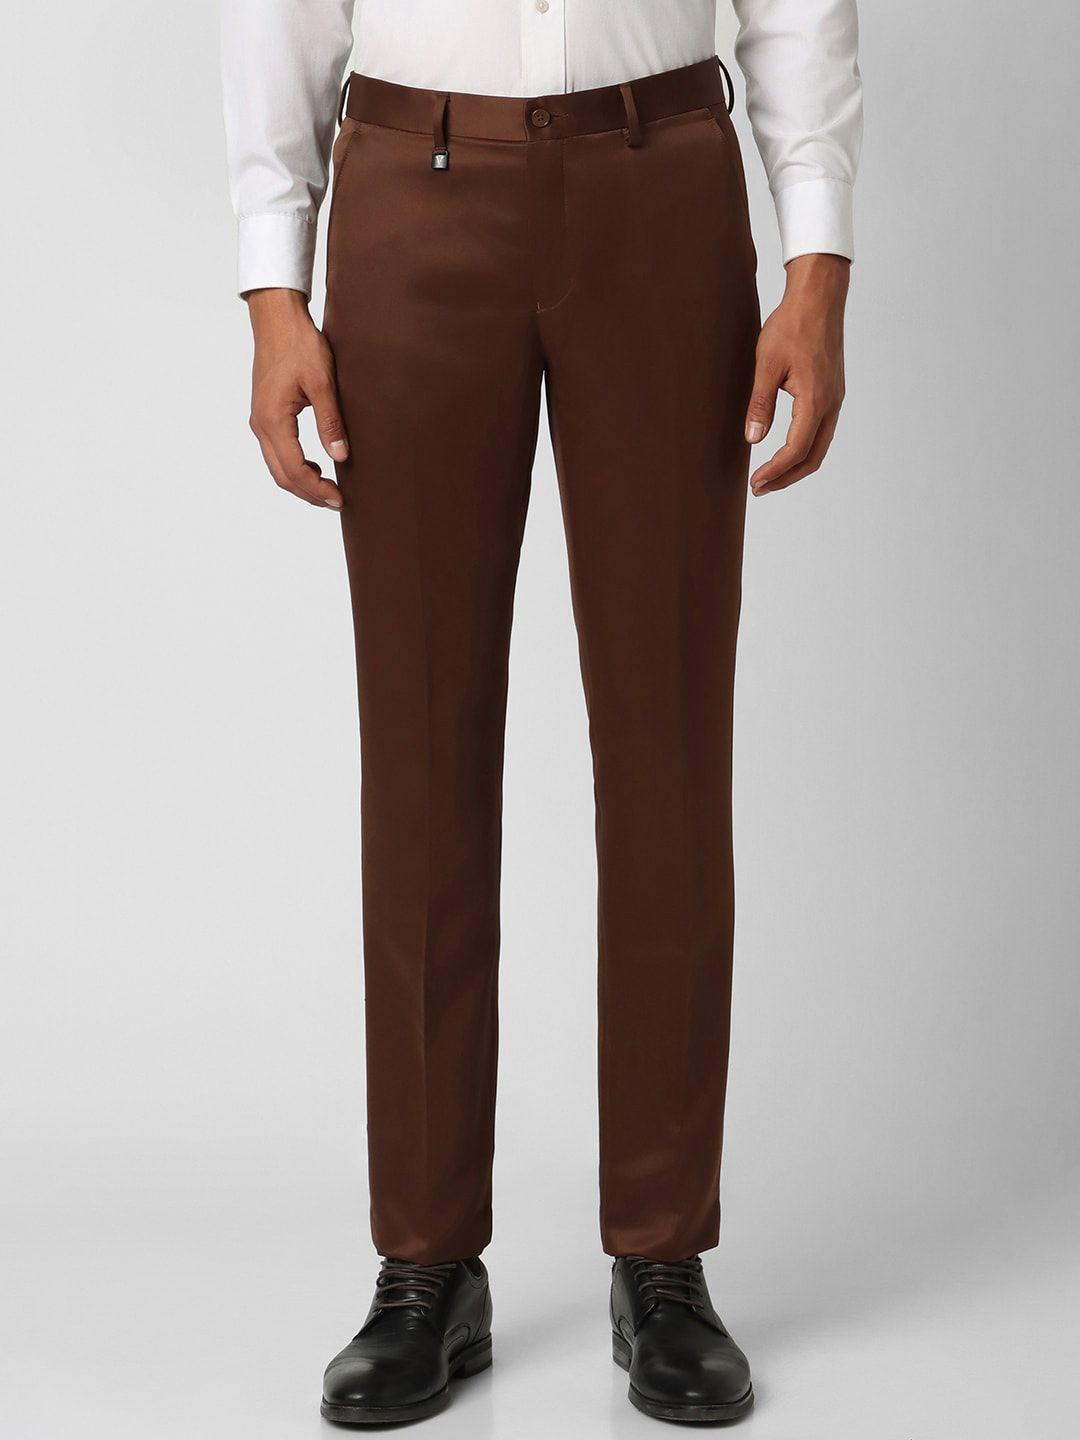 v-dot-men-mid-rise-skinny-fit-formal-trousers